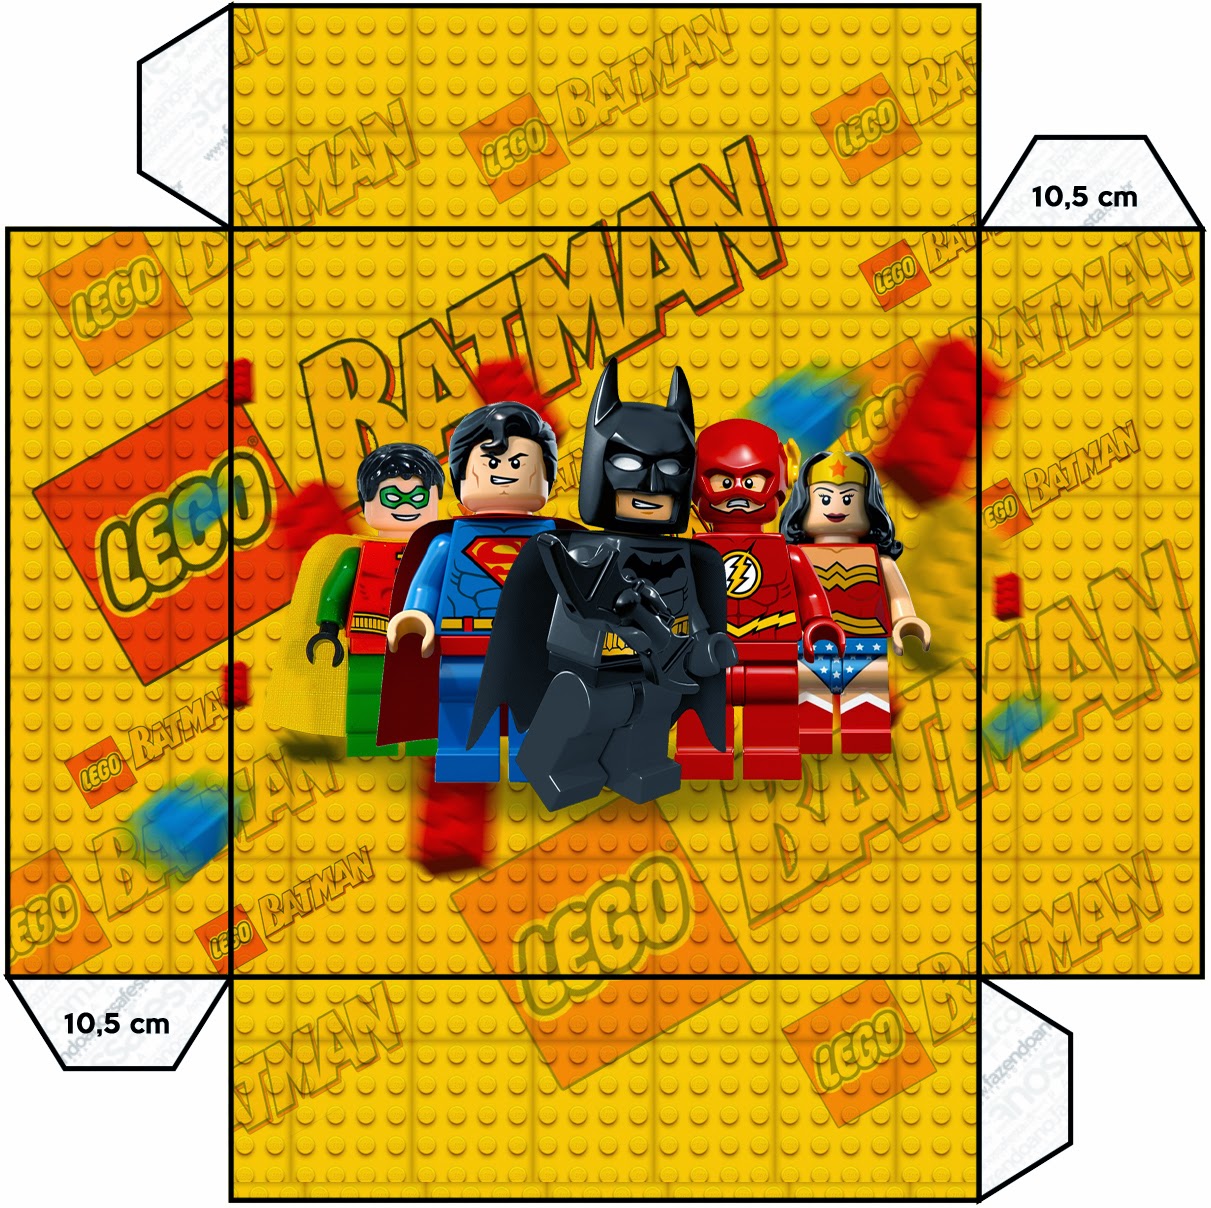 Lego Cajas para Imprimir Gratis. Ideas y material gratis para fiestas y celebraciones Oh My Fiesta!